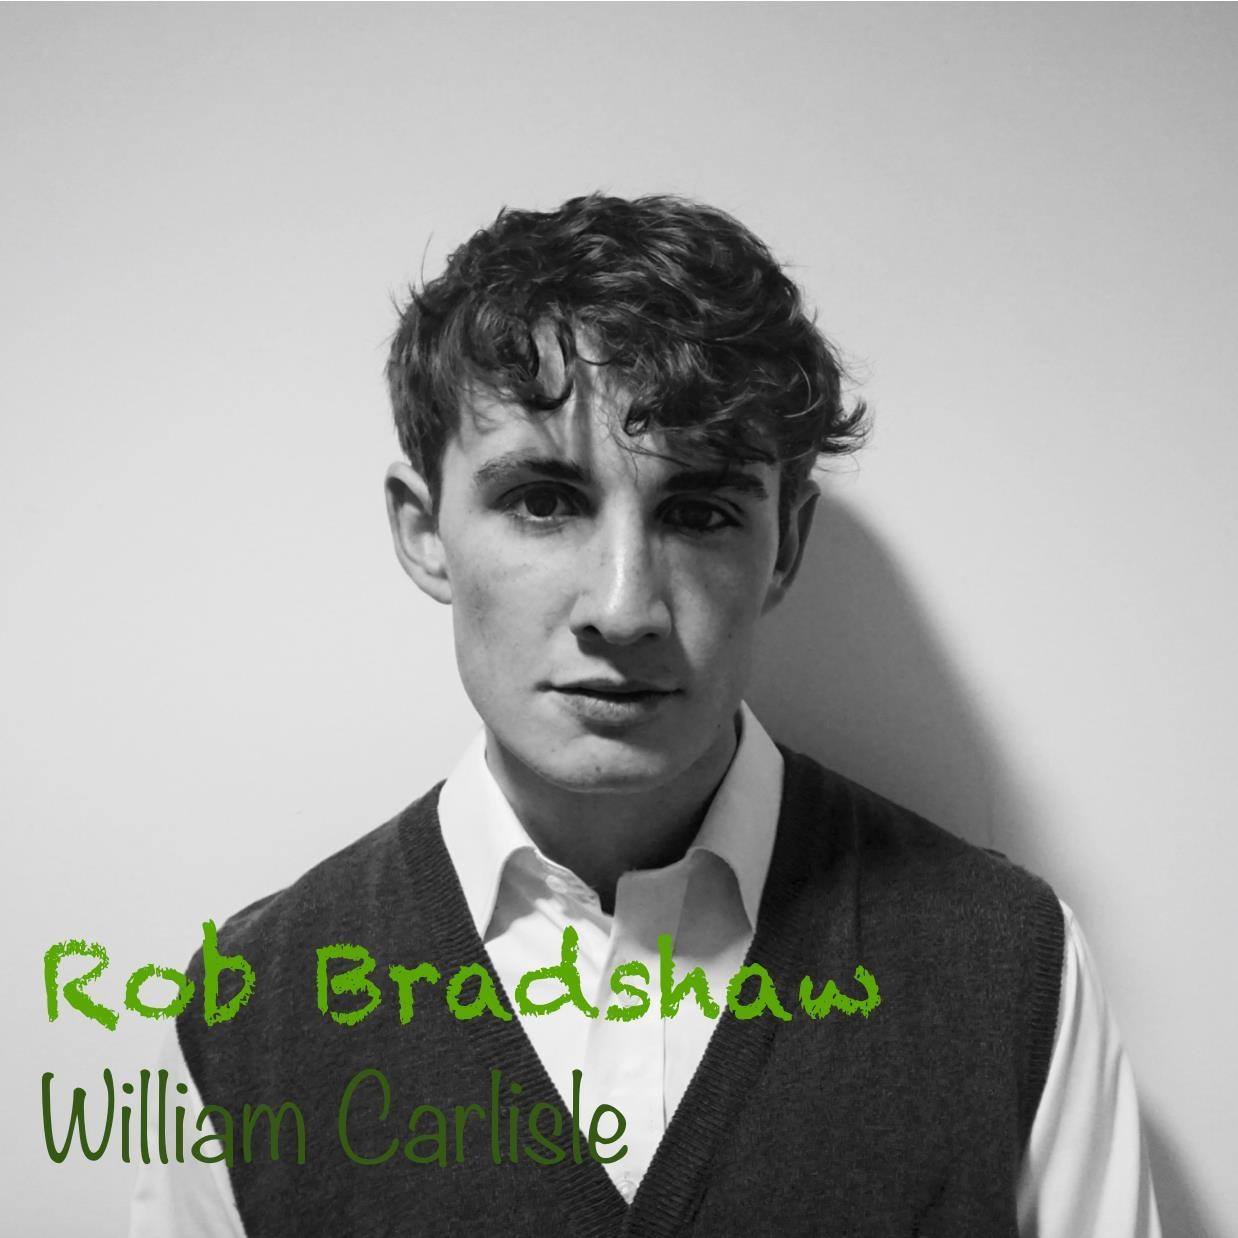 Rob Bradshaw